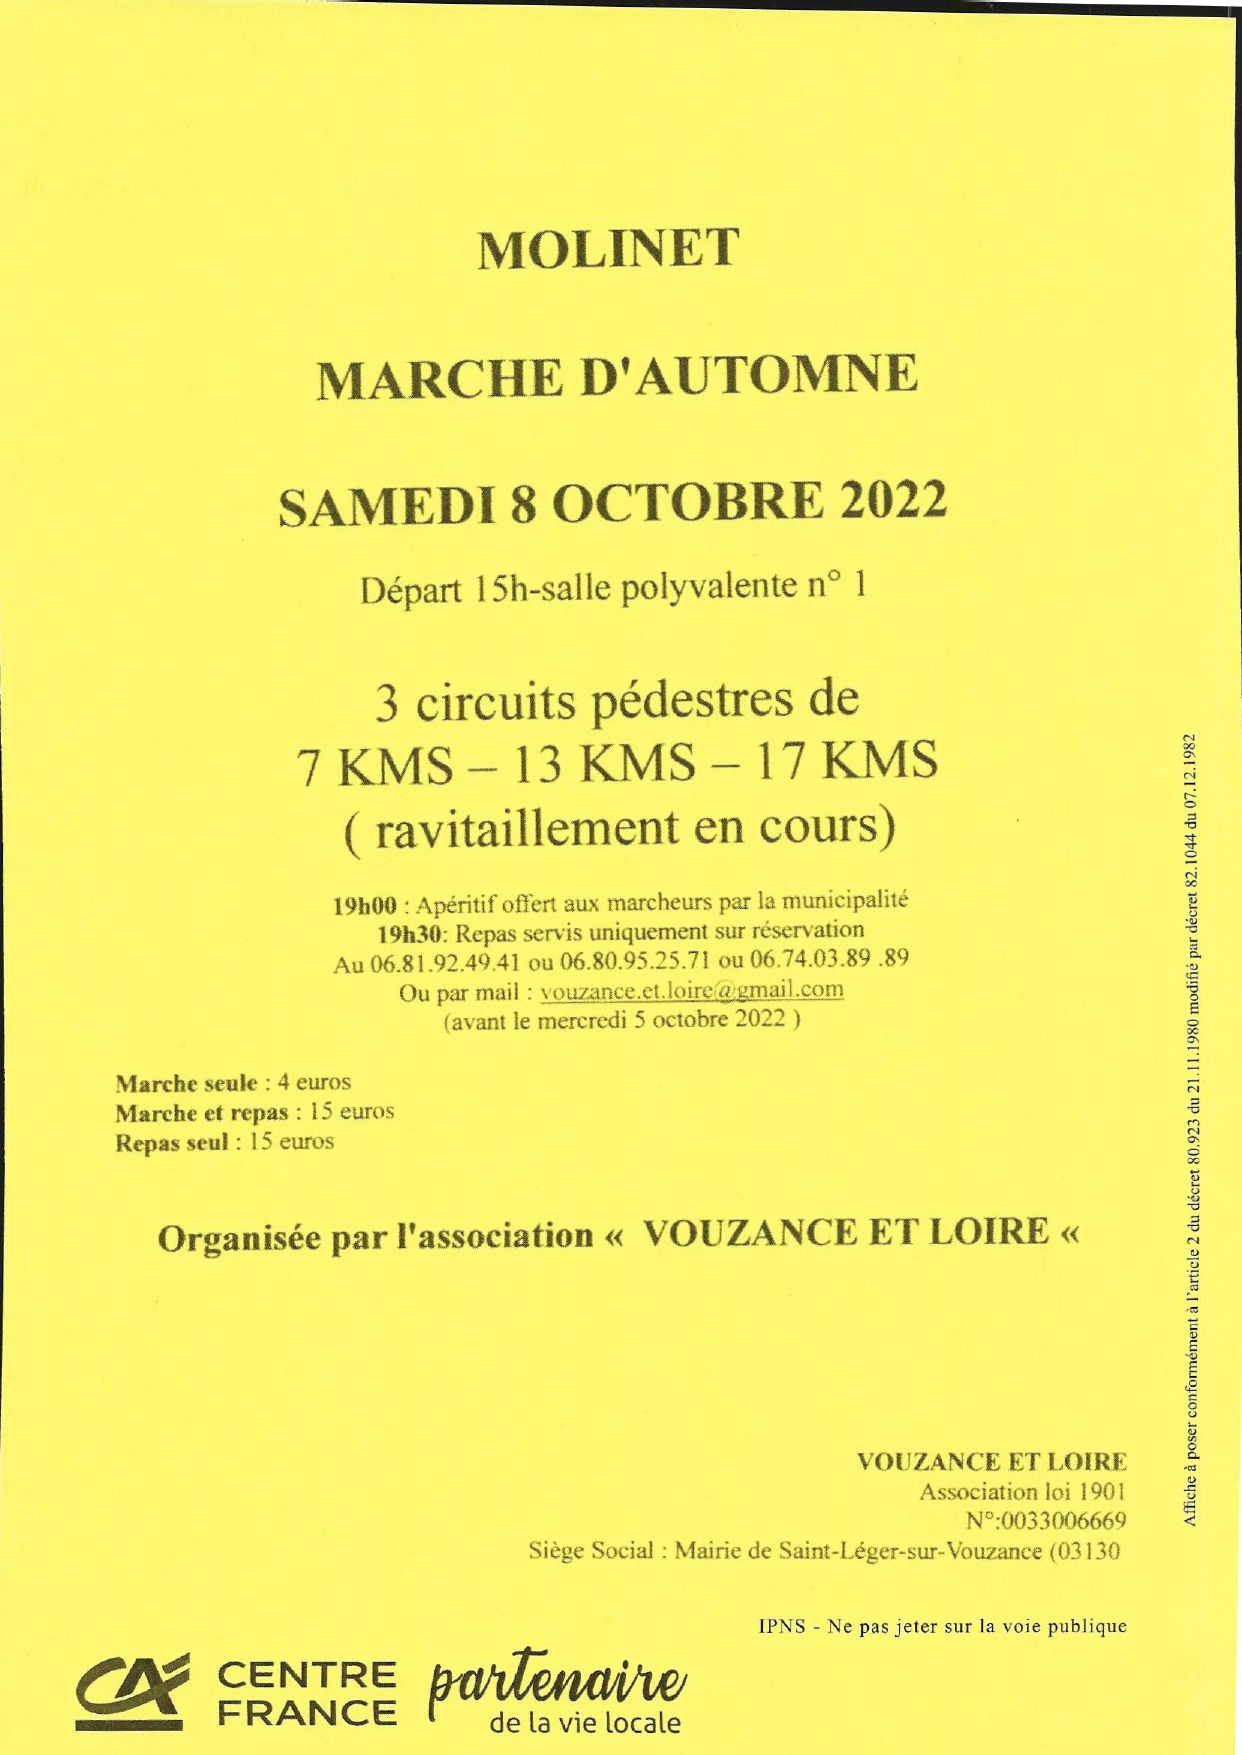 Marche Vouzance et Loire - Molinet- Samedi 8 octobre